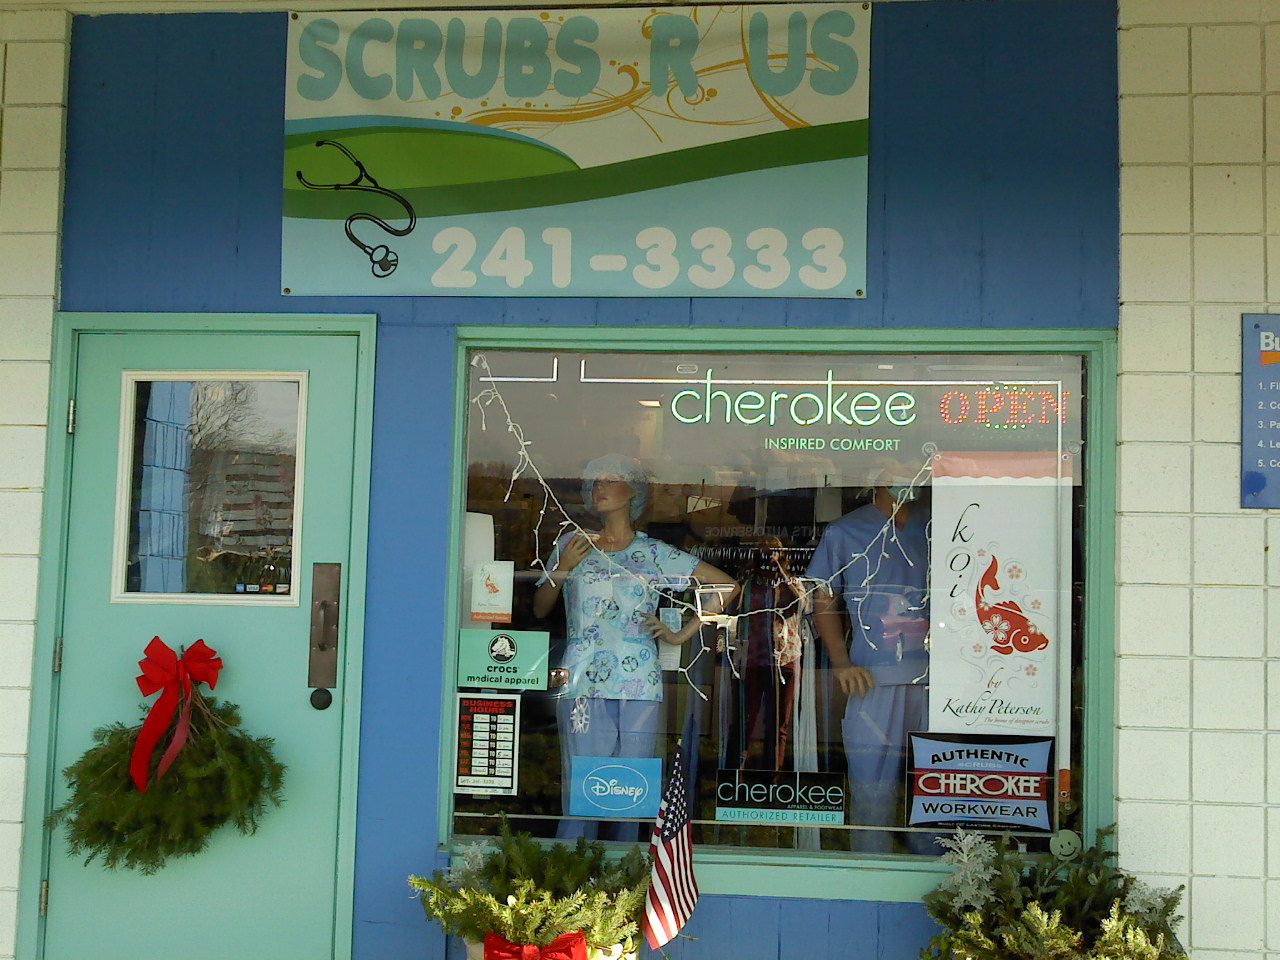 Scrubs “R” Us